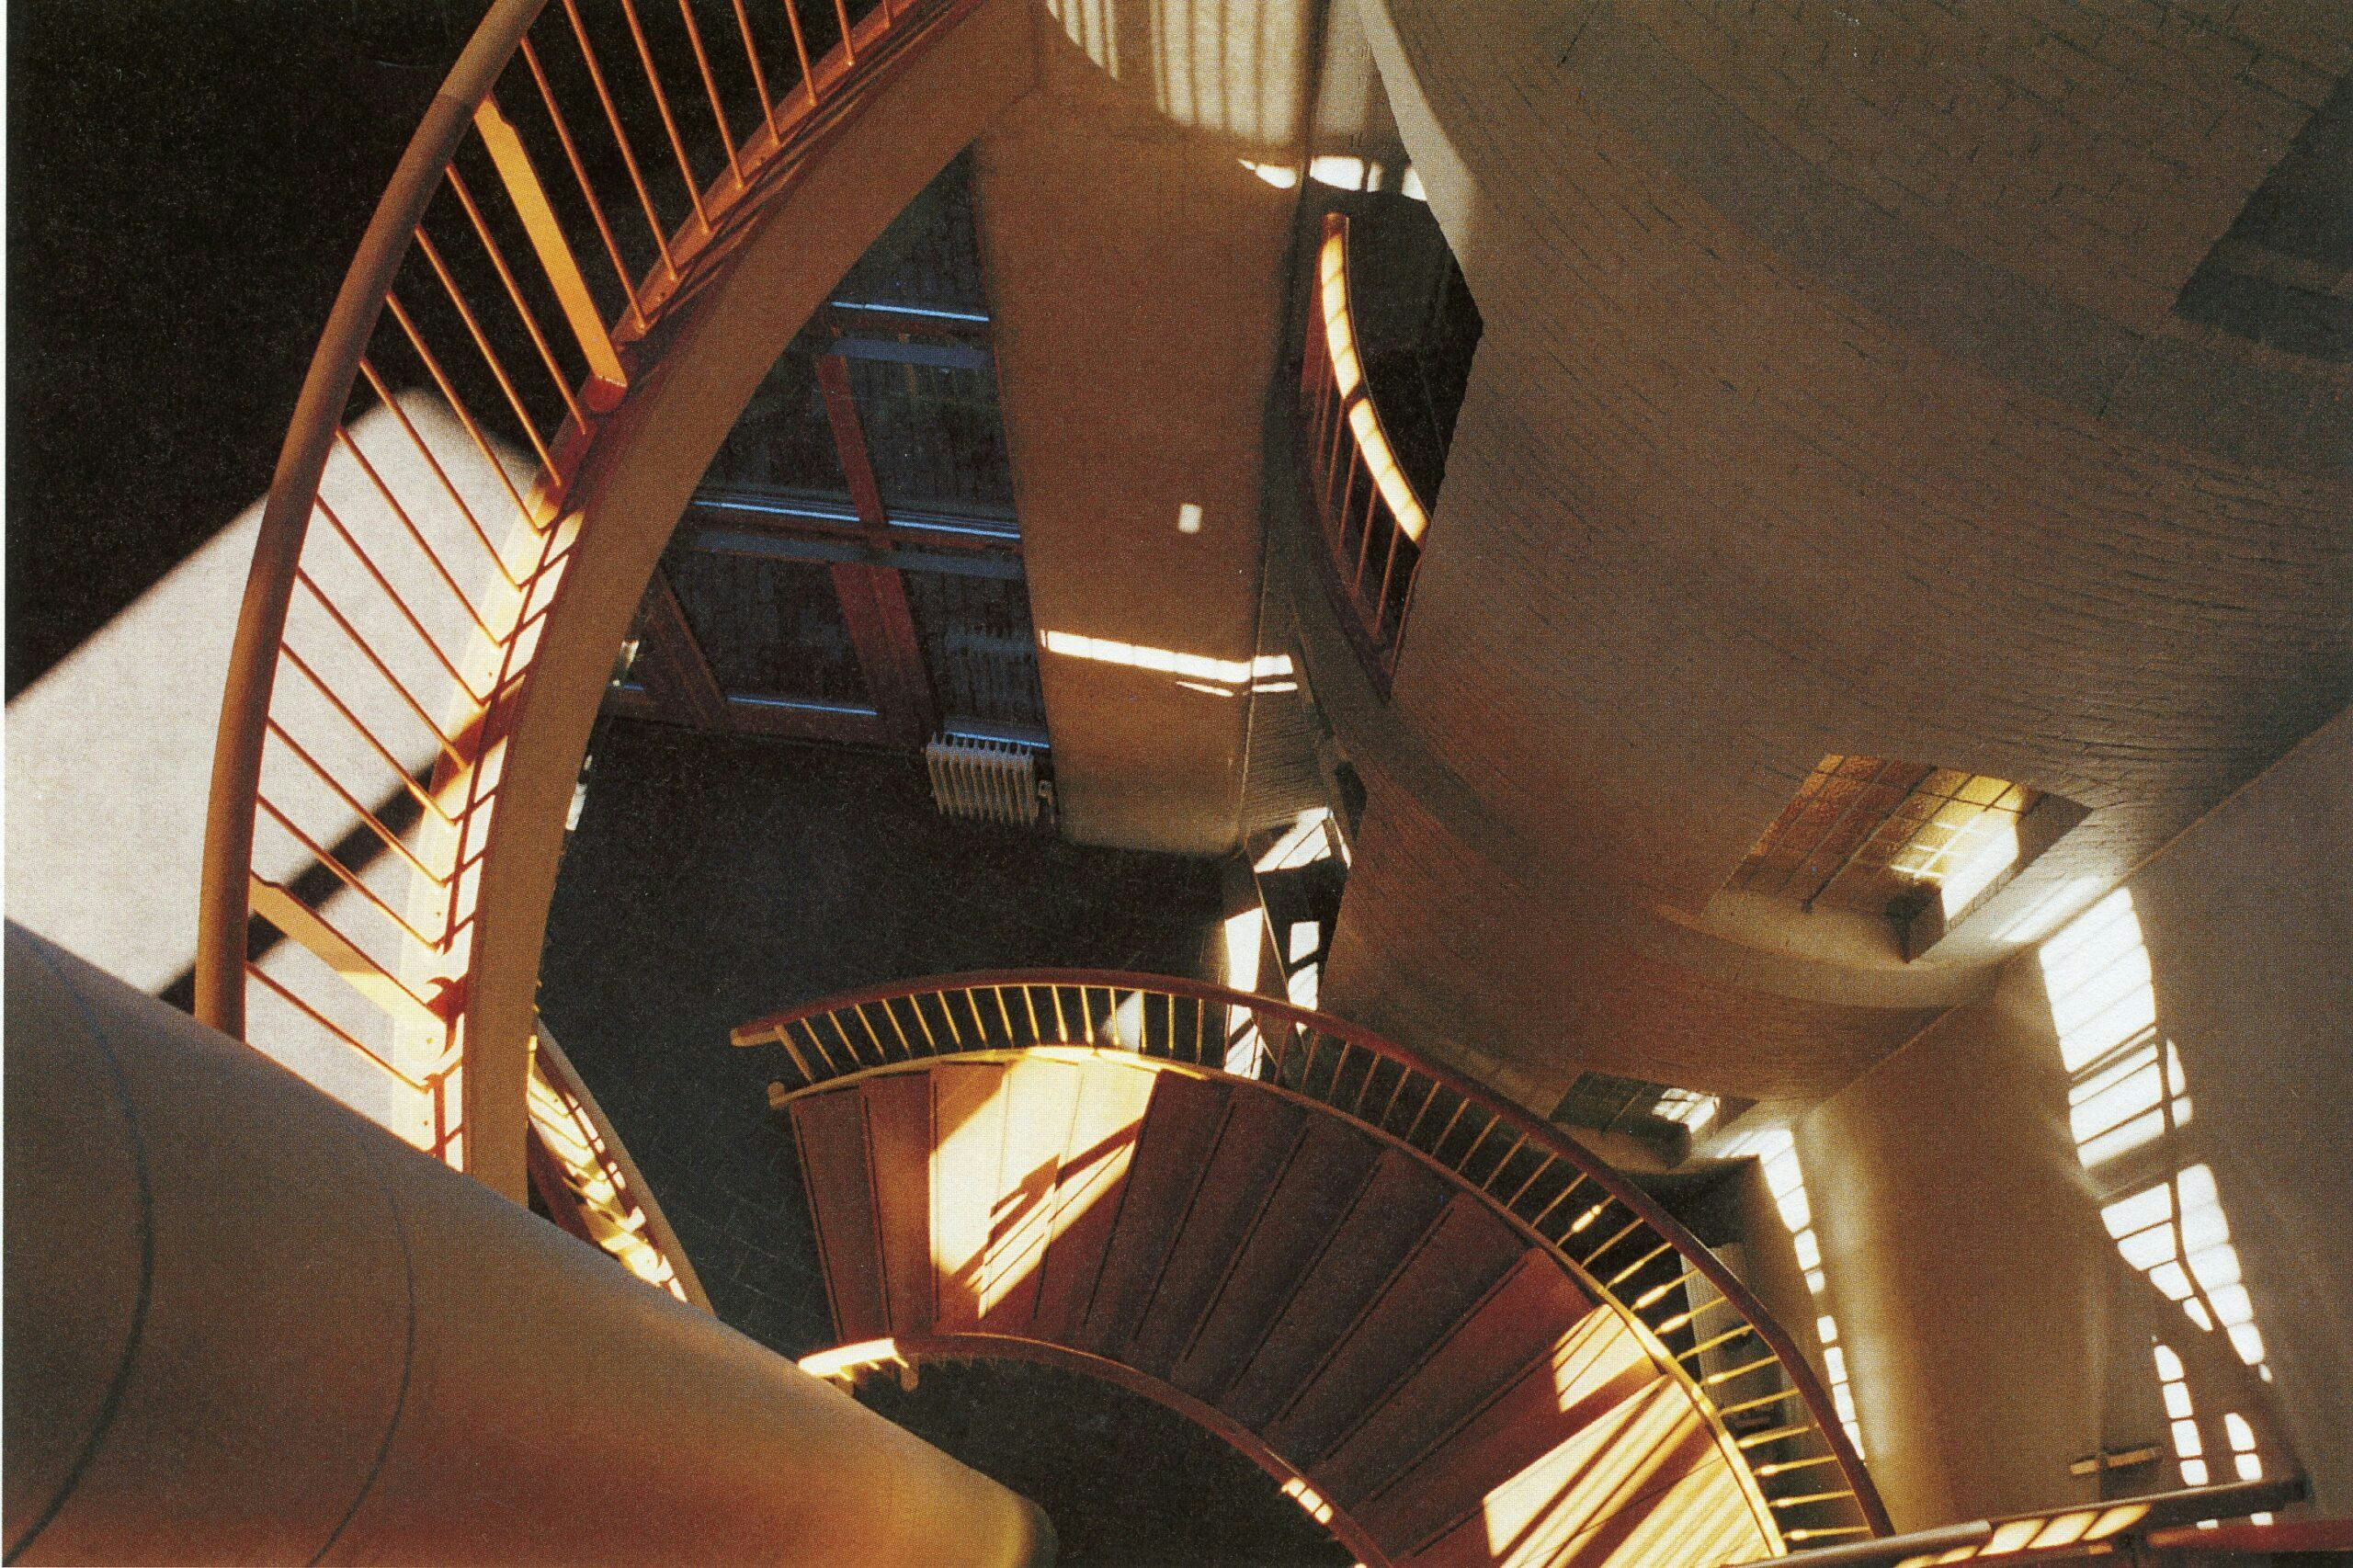 Het centrale trappenhuis van de Algemene Rekenkamer in Den Haag. Ontwerp Aldo van Eyck. Beeld Francis Strauven